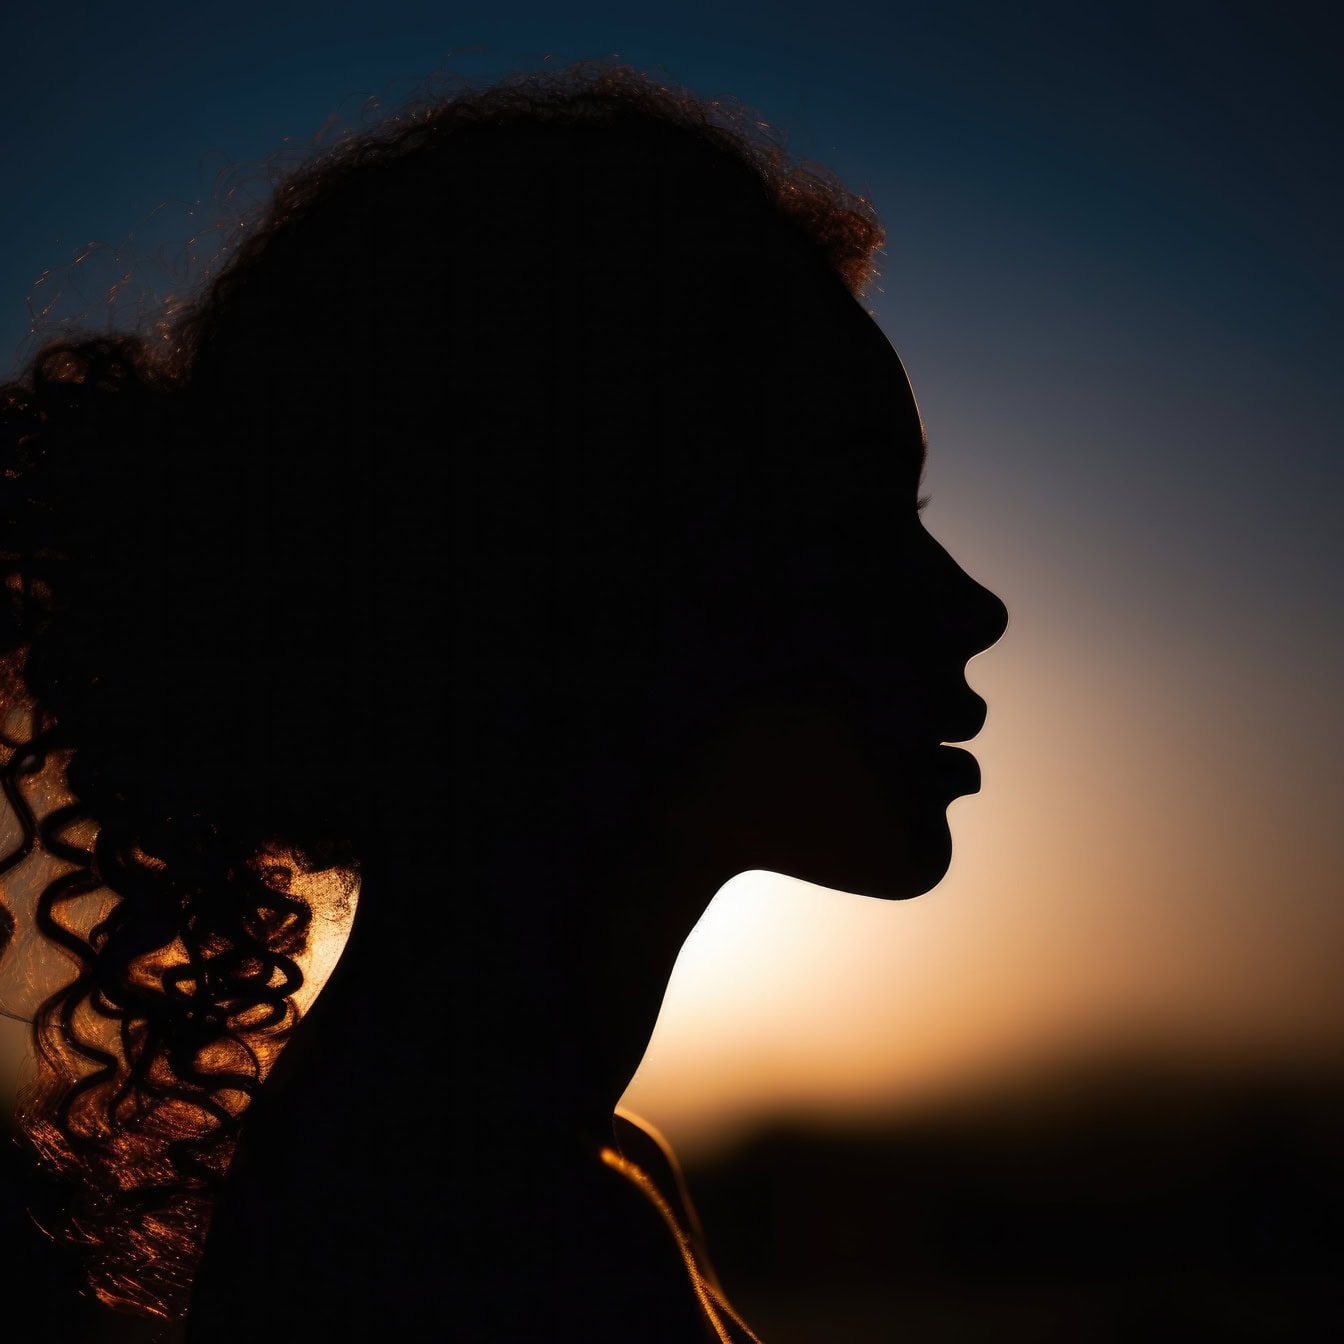 ภาพเงาของโปรไฟล์ของผู้หญิงผมหยิกยาวที่มีพระอาทิตย์ตกเป็นแสงไฟ